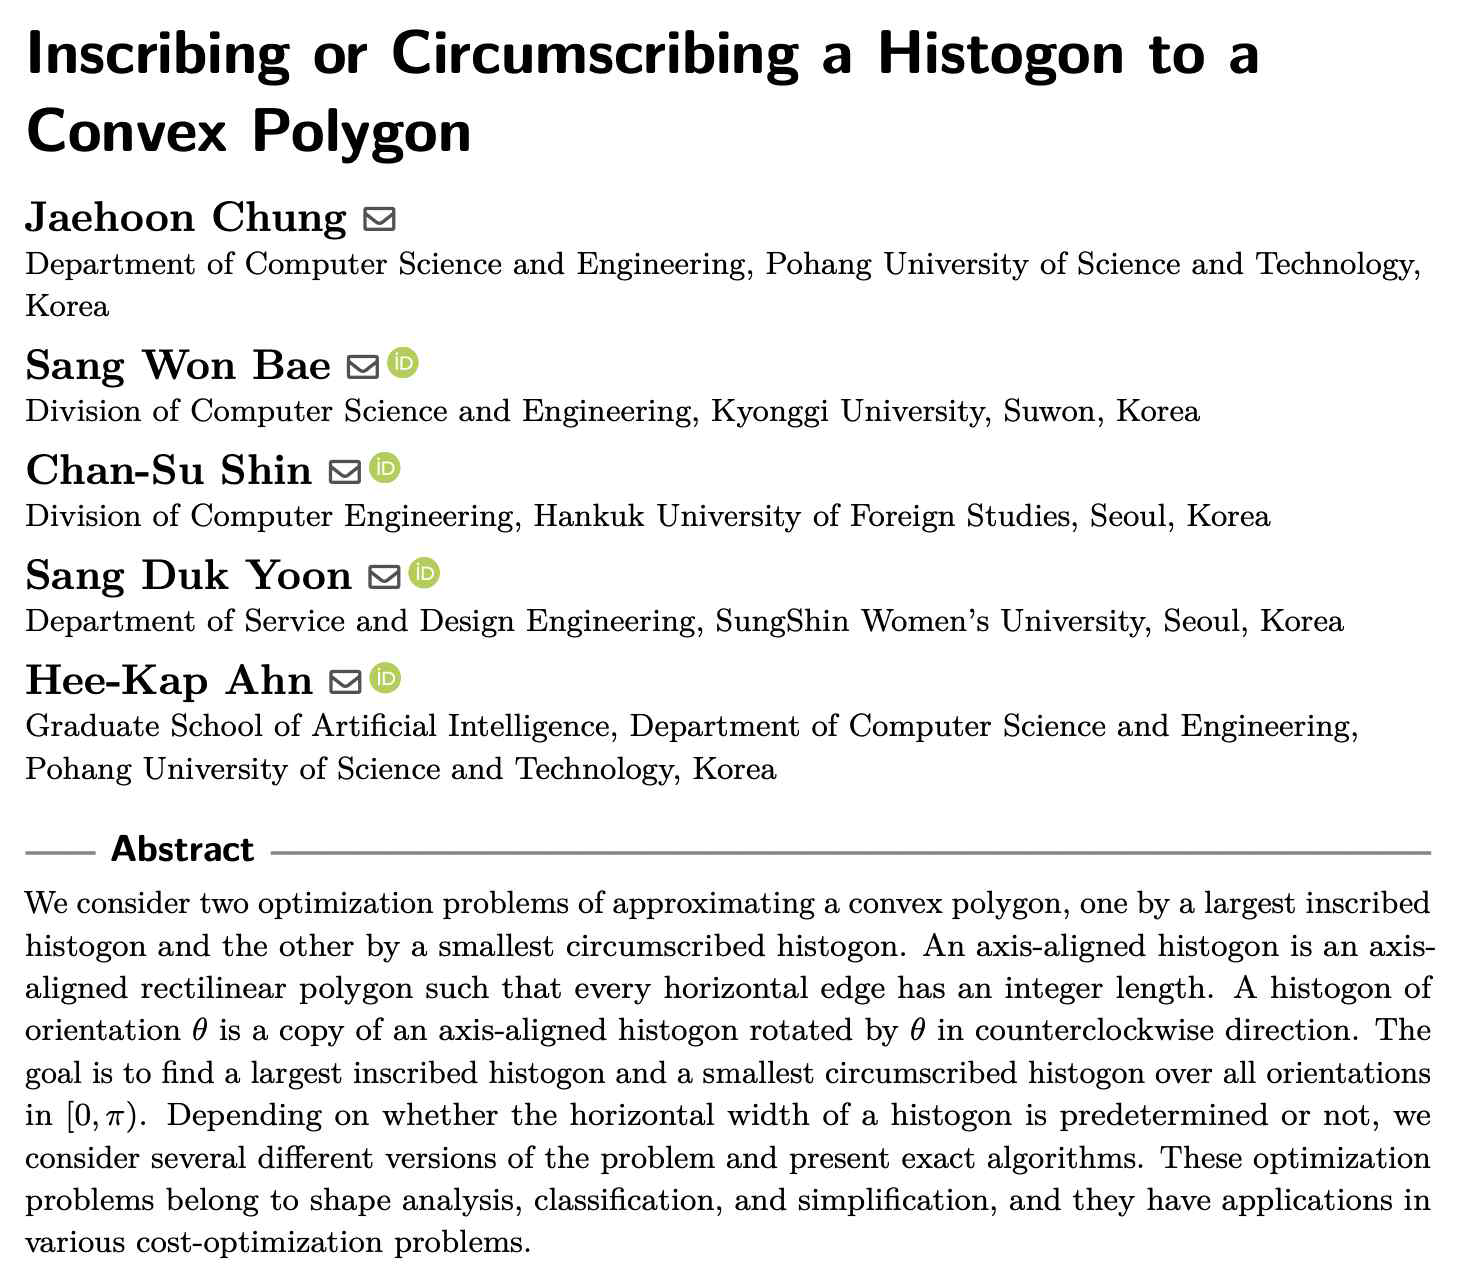 논문 “Inscribing or Circumscribing a Histogon to a Convex Polygon”의 초록